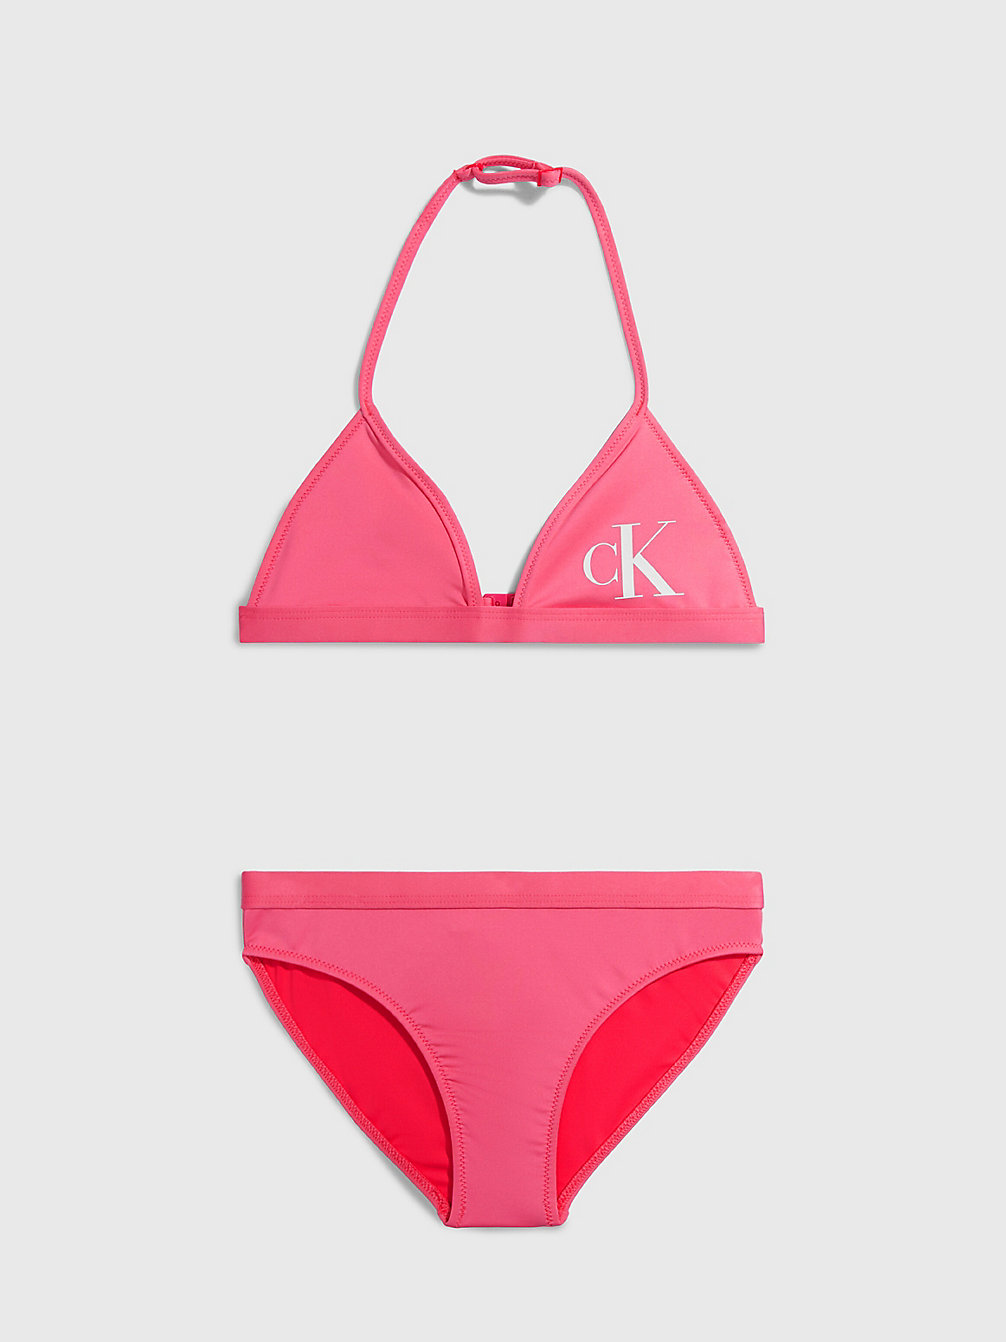 PINK FLASH > Triangelbikini Voor Meisjes - CK Monogram > undefined girls - Calvin Klein